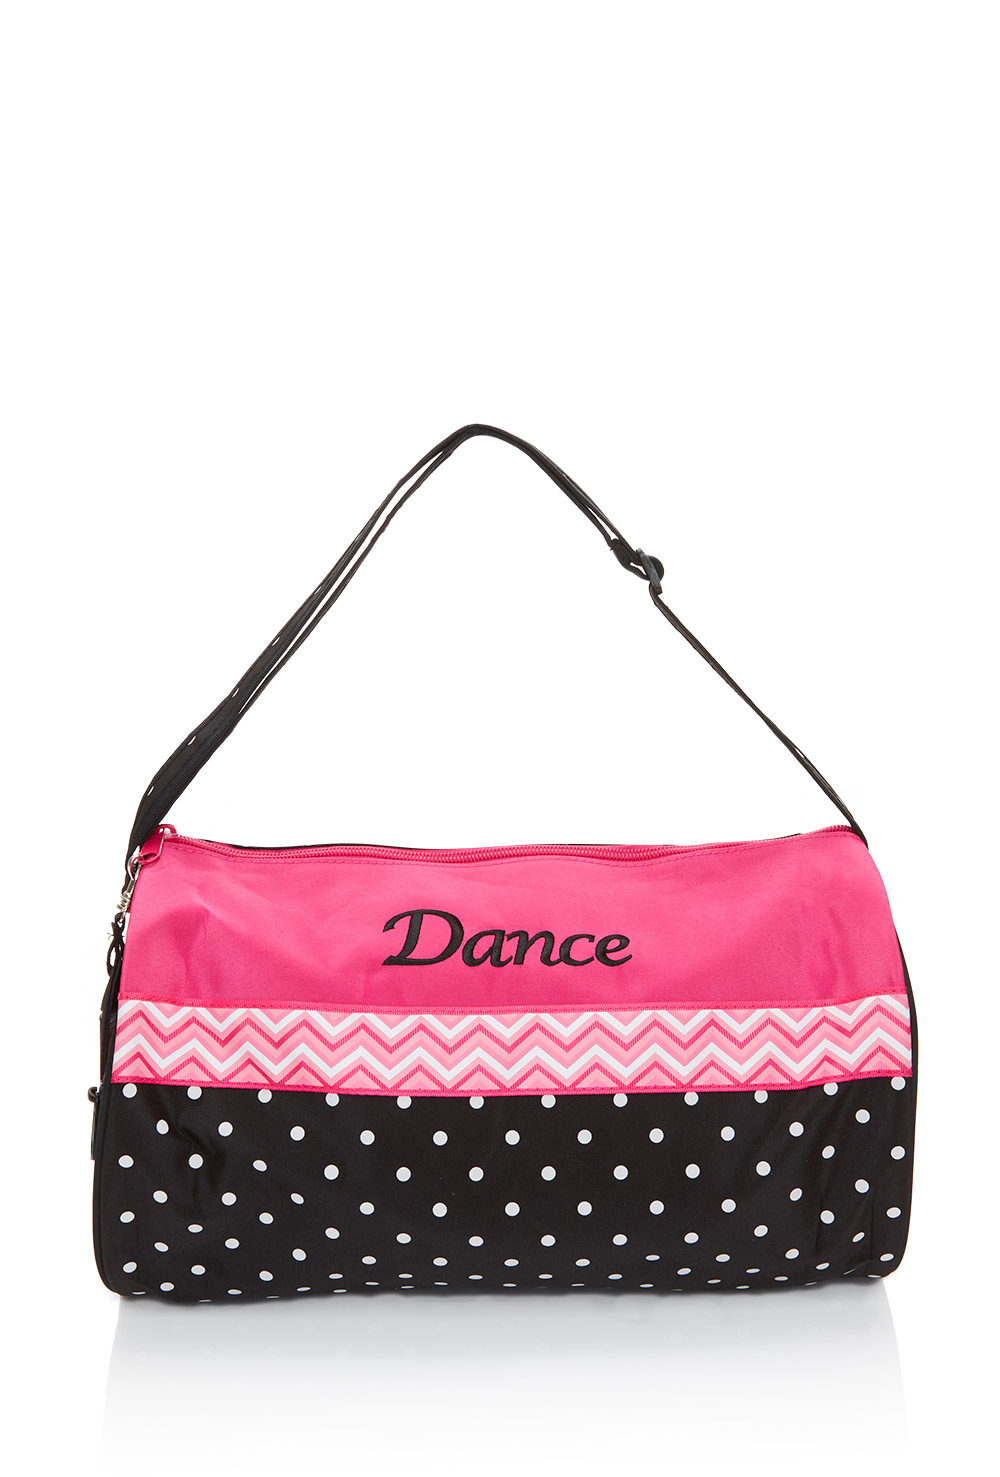 Polka Dot Dance Bag - Porselli Dancewear